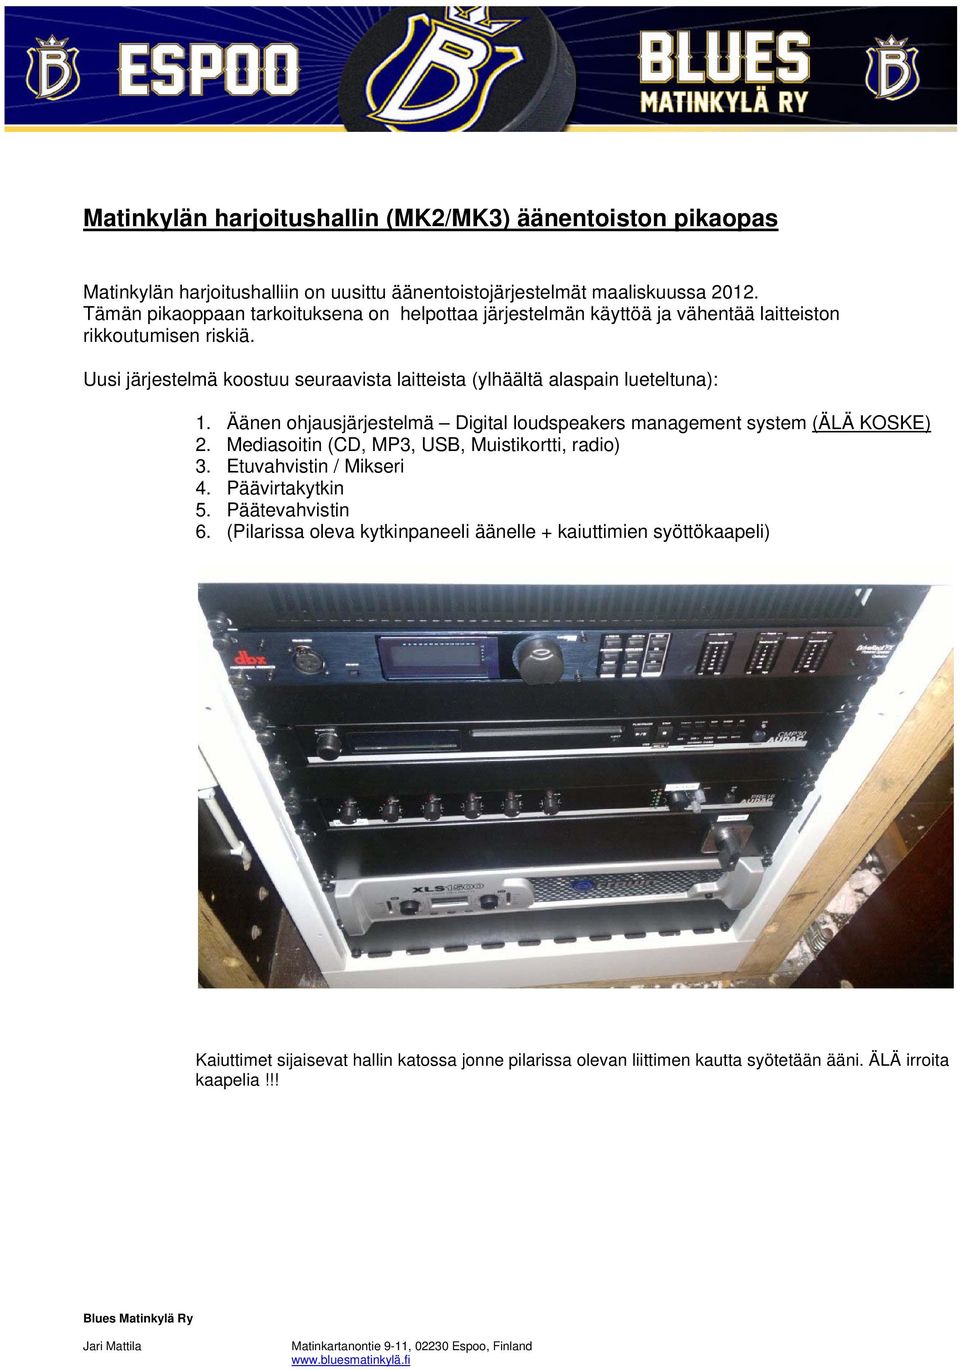 Äänen ohjausjärjestelmä Digital loudspeakers management system (ÄLÄ KOSKE) 2. Mediasoitin (CD, MP3, USB, Muistikortti, radio) 3. Etuvahvistin / Mikseri 4. Päävirtakytkin 5. Päätevahvistin 6.